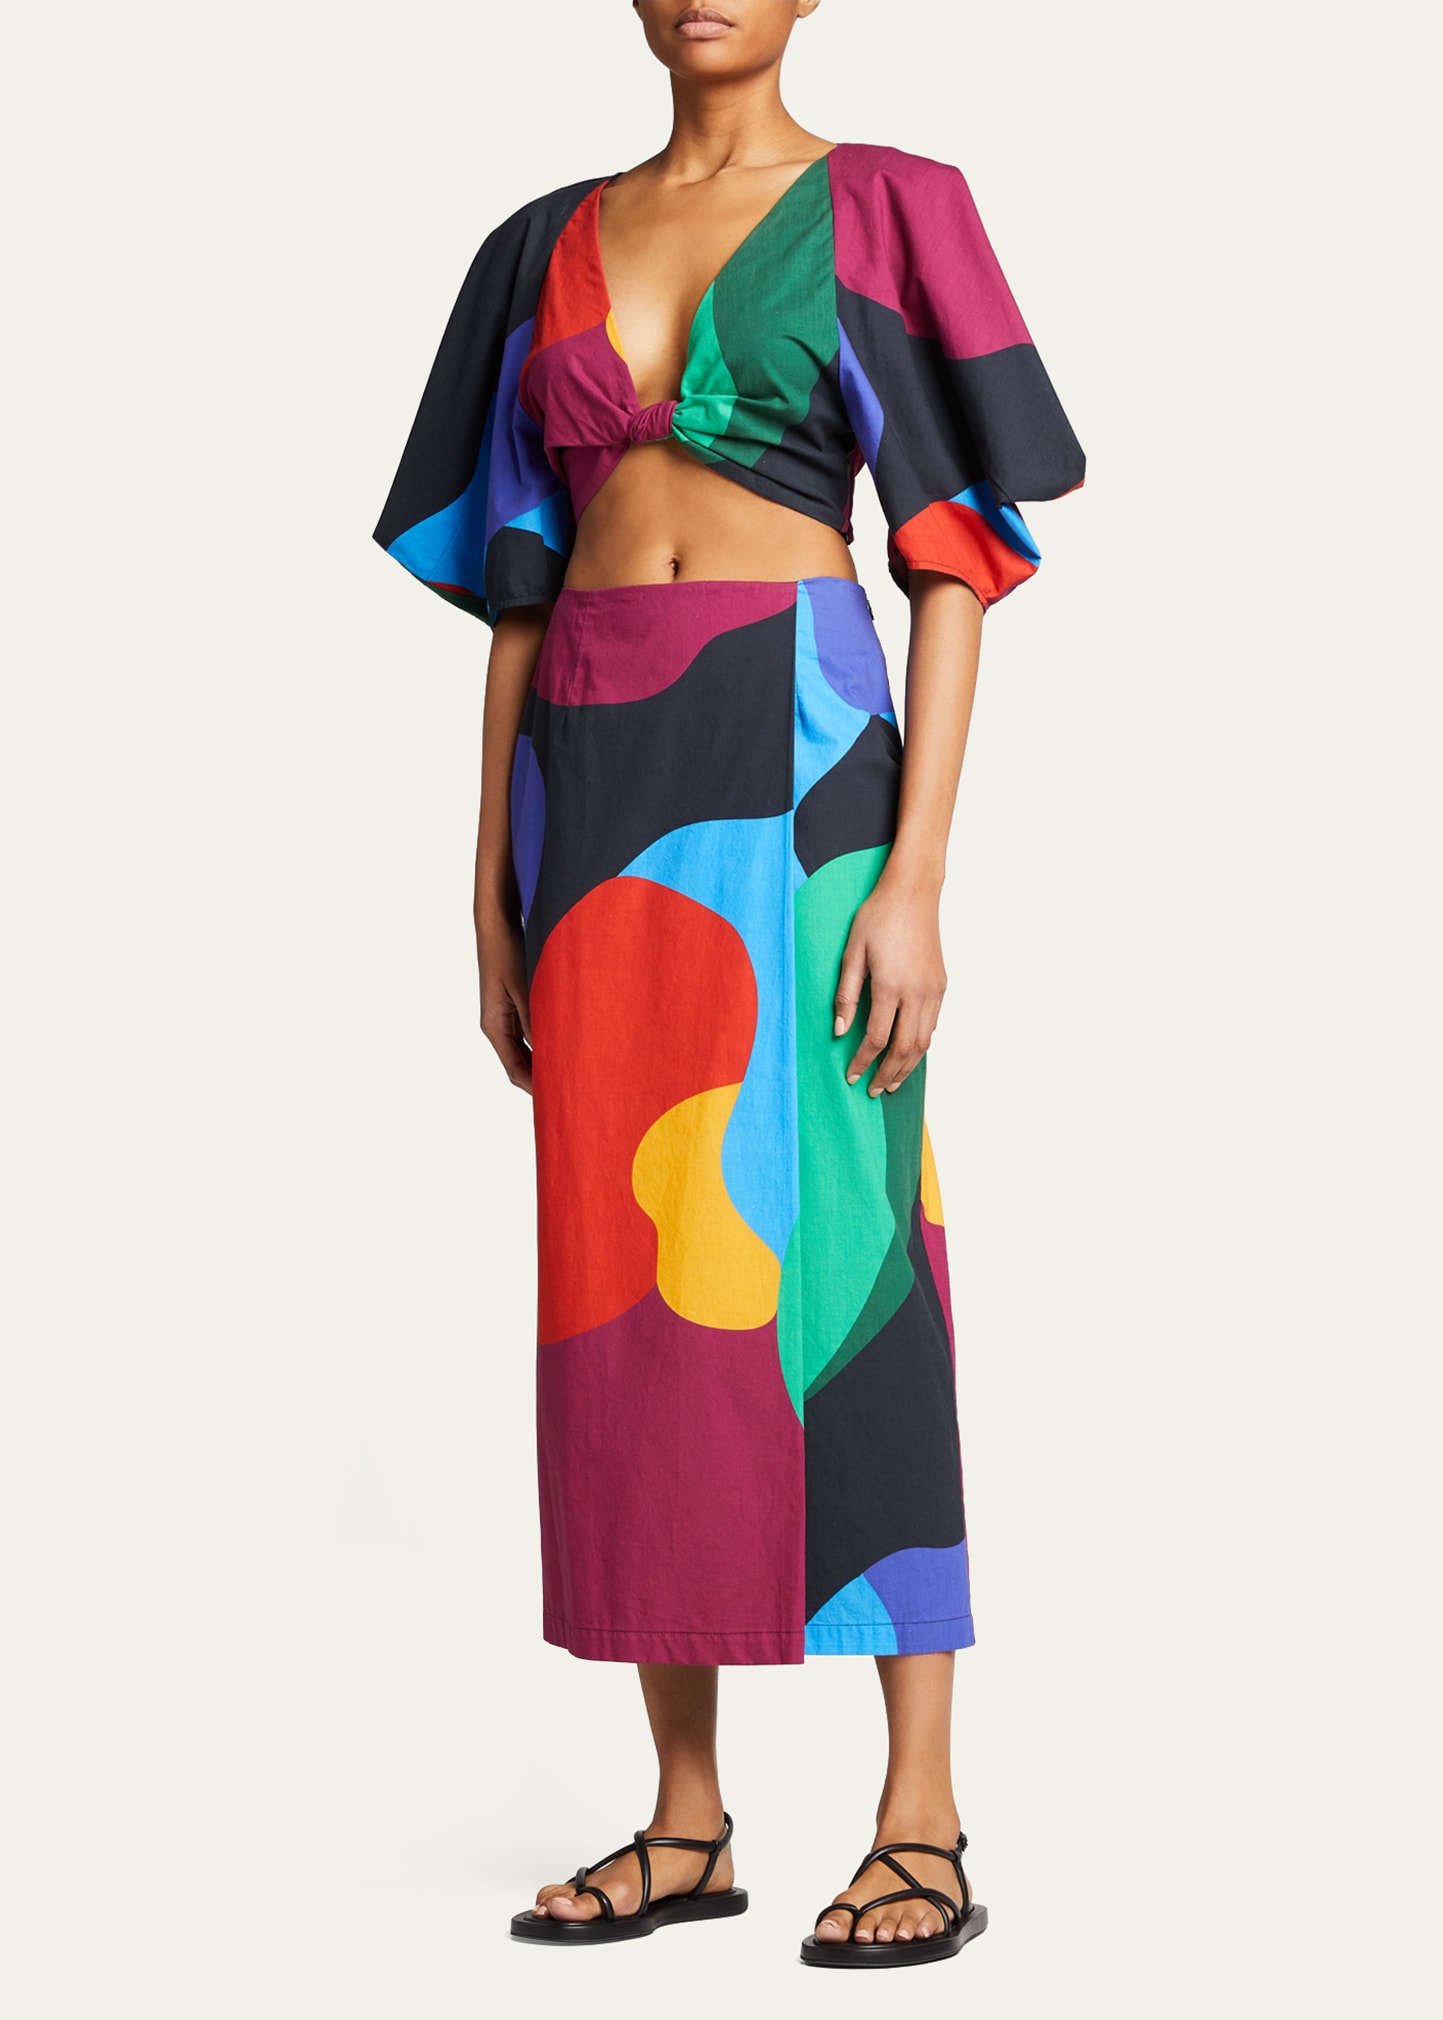 Sunja Abstract Printed Wrap Midi Skirt